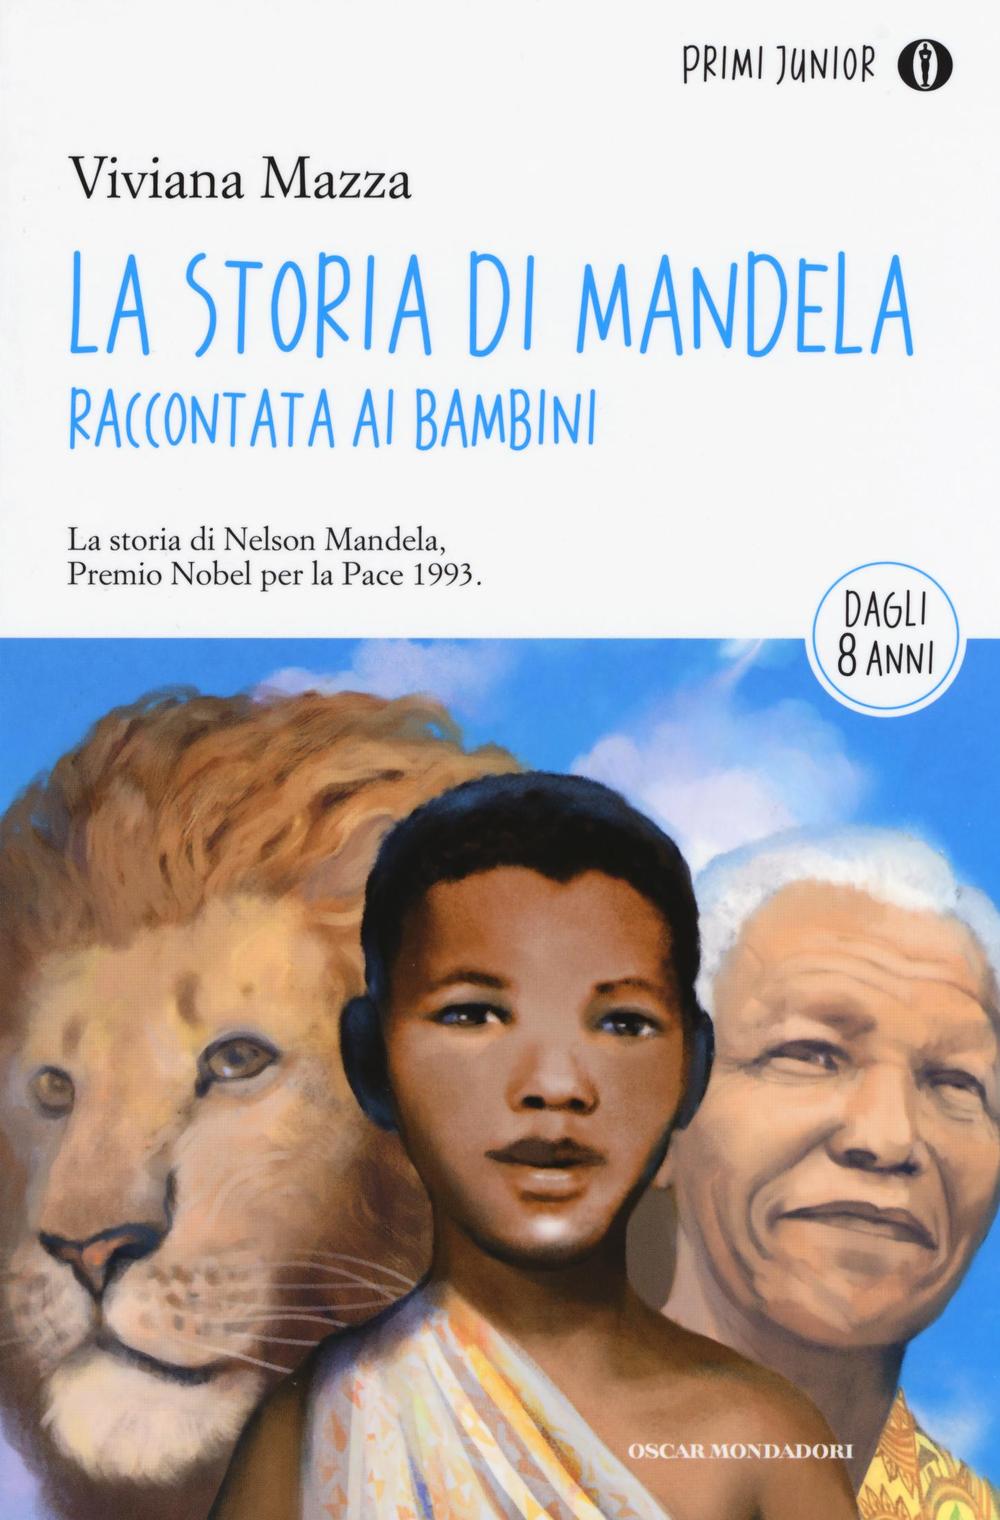 La storia di Mandela raccontata ai bambini.